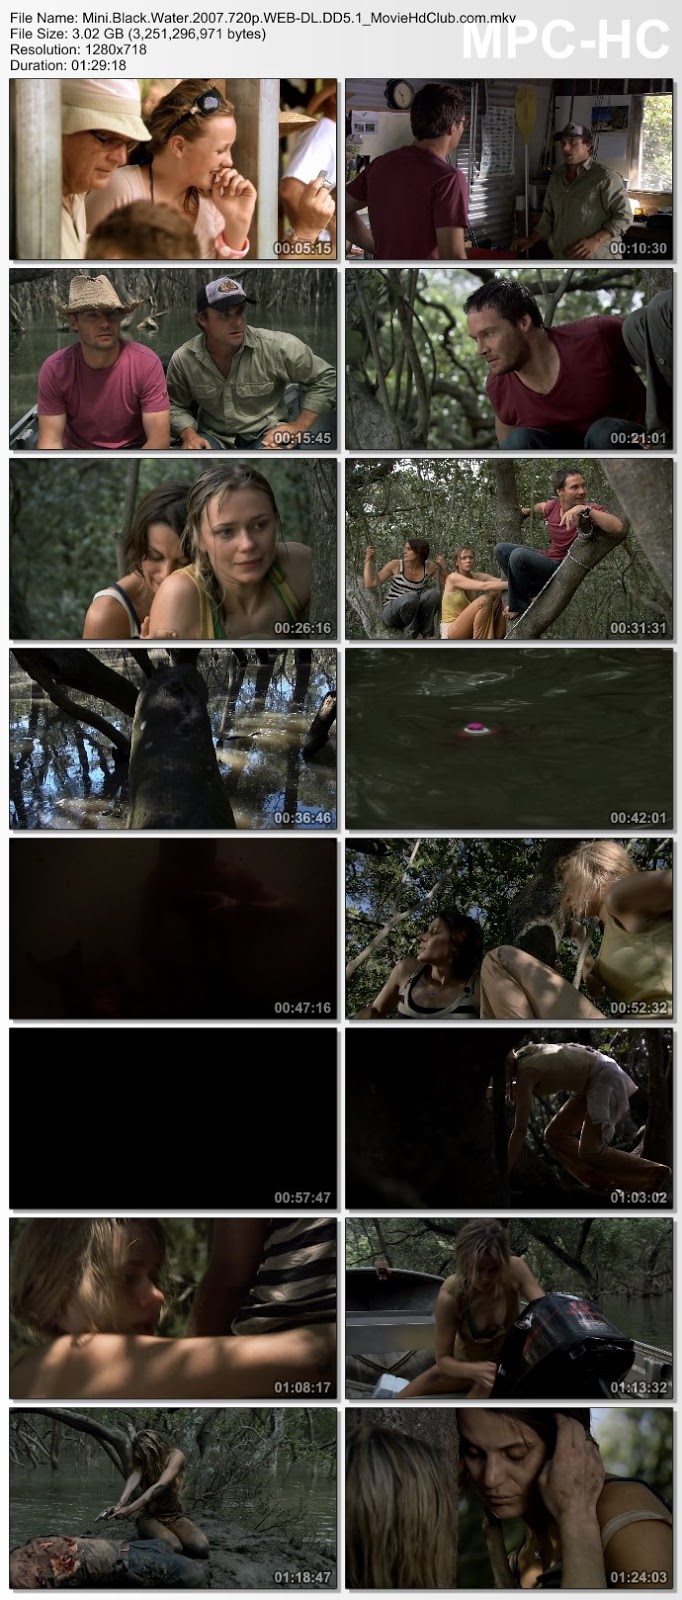 [Mini-HD] Black Water (2007) - -( ไม่เอาไม่พูด )-มกว่านี้ ไม่มีในโลก [720p][เสียง:ไทย 5.1/Eng 5.1][ซับ:ไทย/Eng][.MKV][3.03GB] BW_MovieHdClub_SS